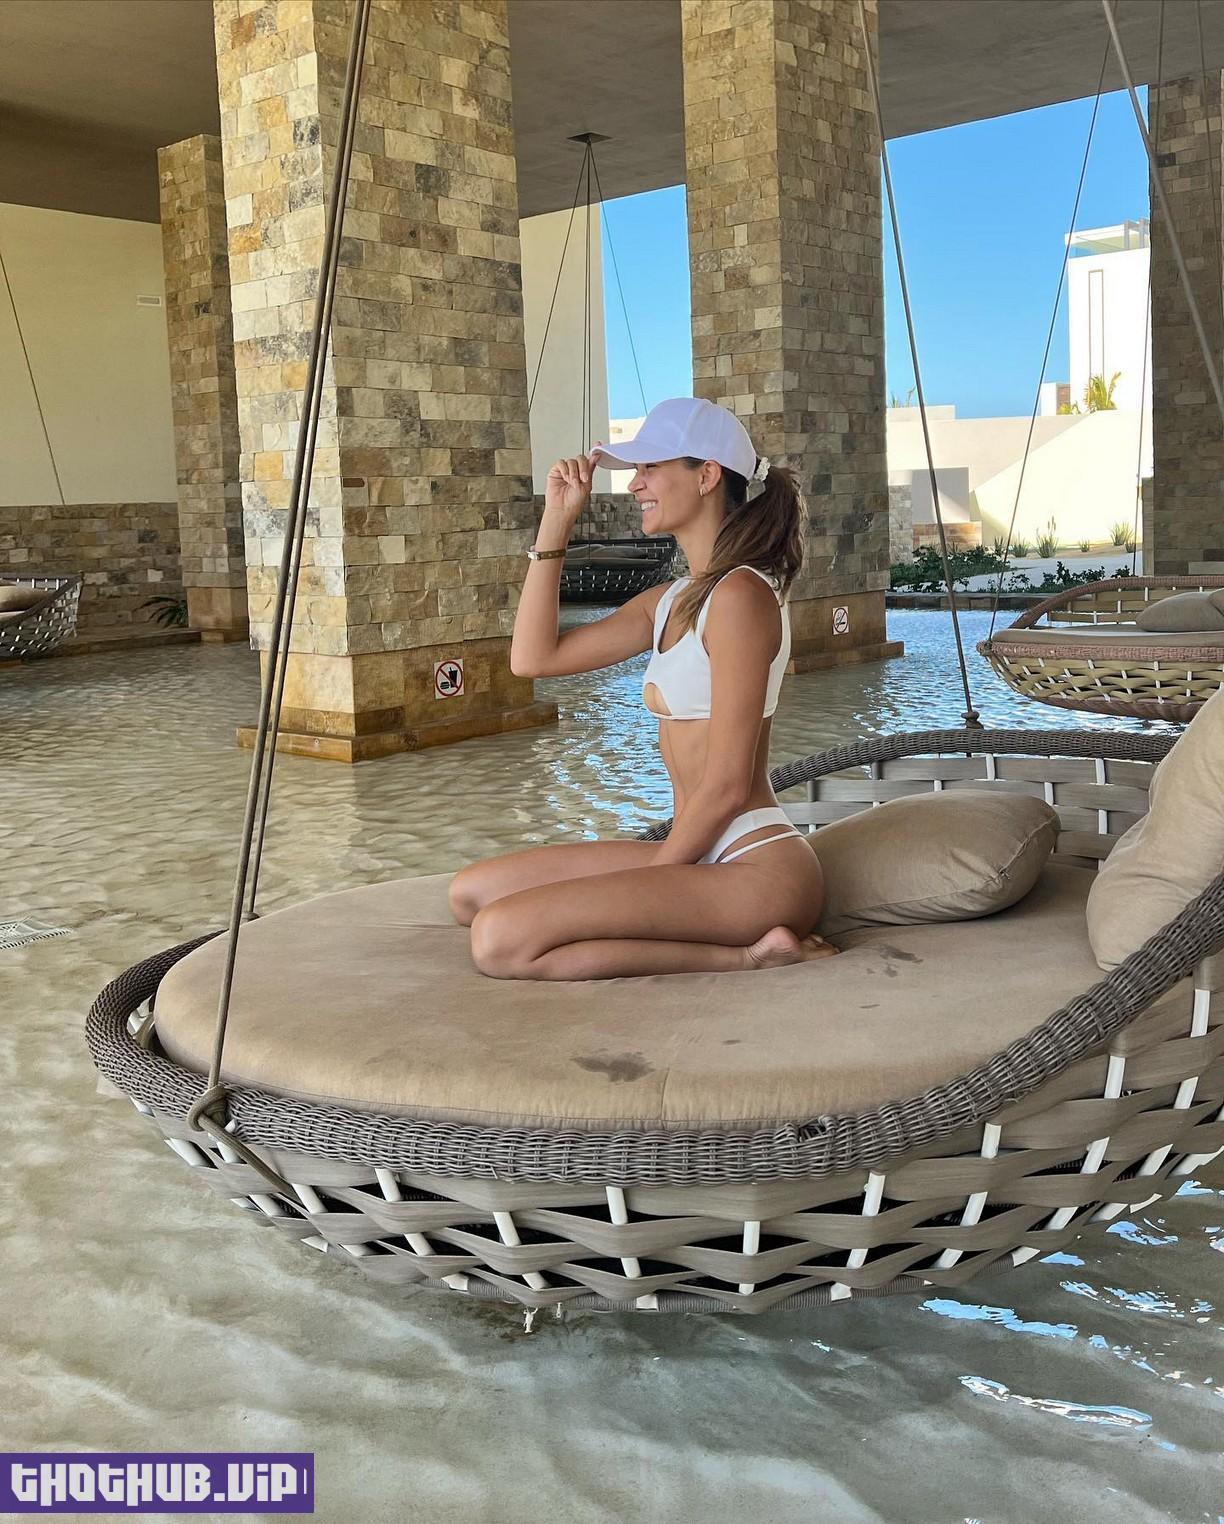 Josephine Skriver Bikini In Coachella 3 Photos